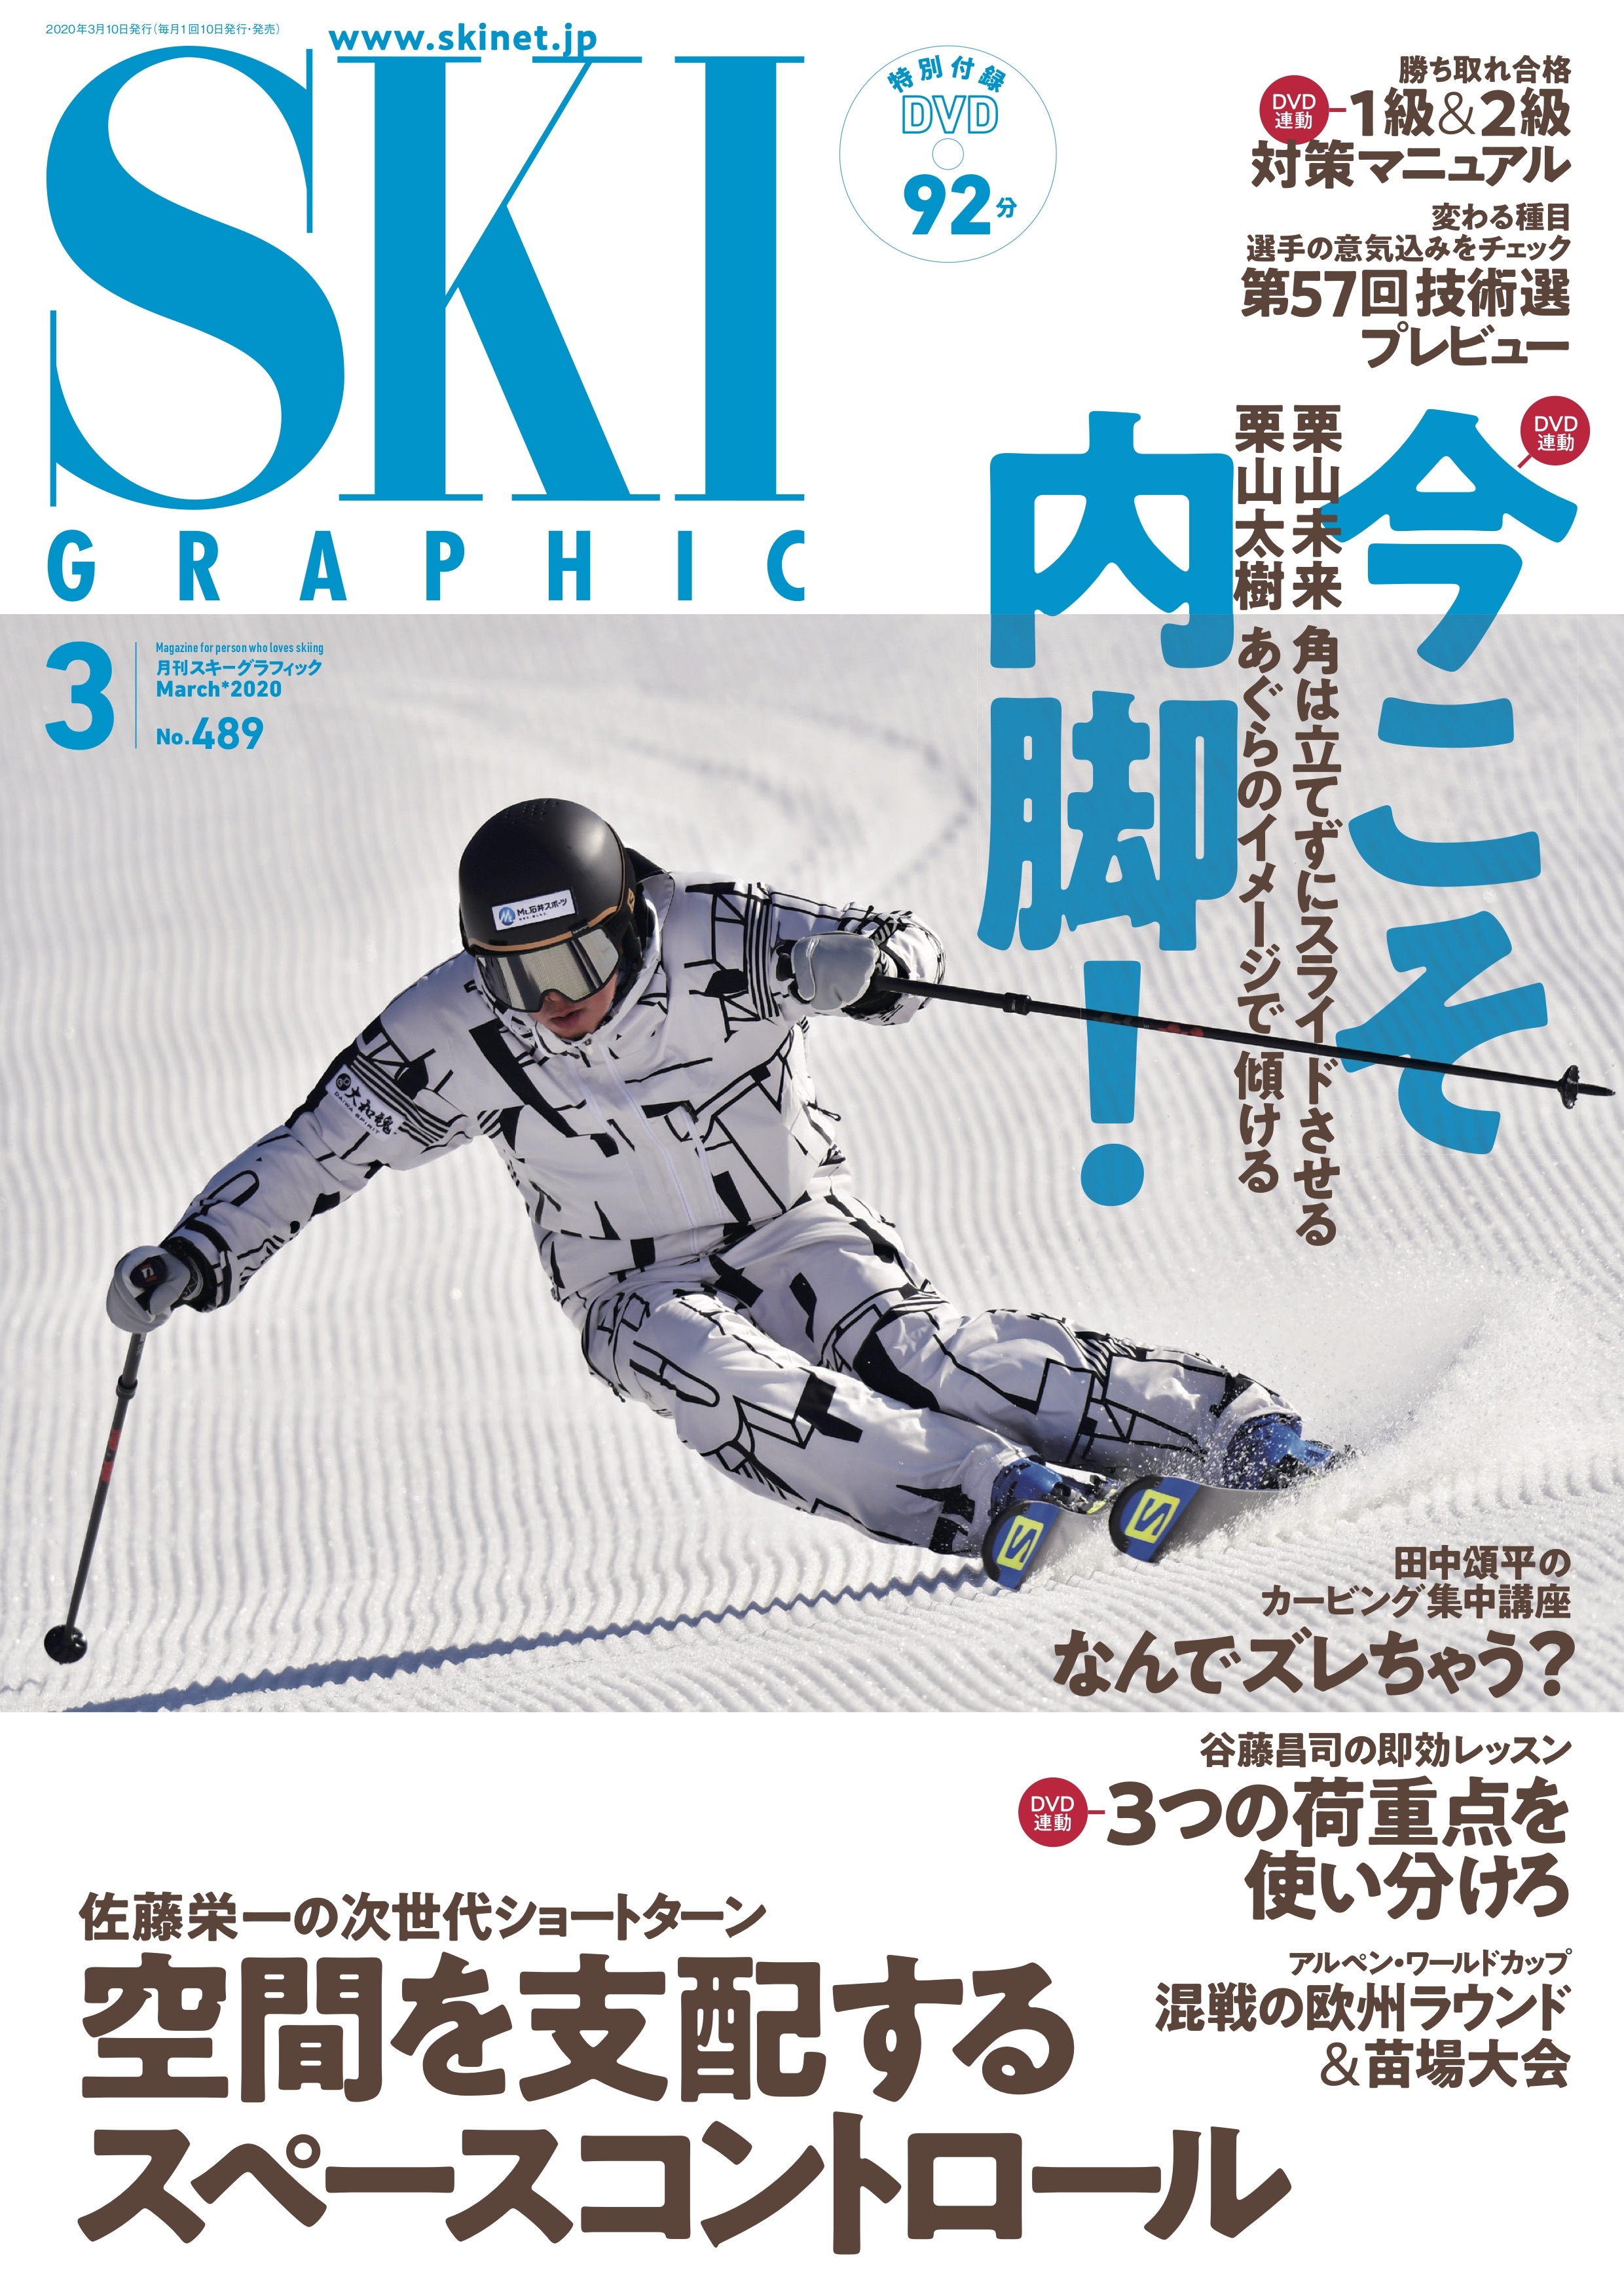 月刊スキーグラフィック SKI GRAPHIC 2020年 6月号 www.pefc.com.uy